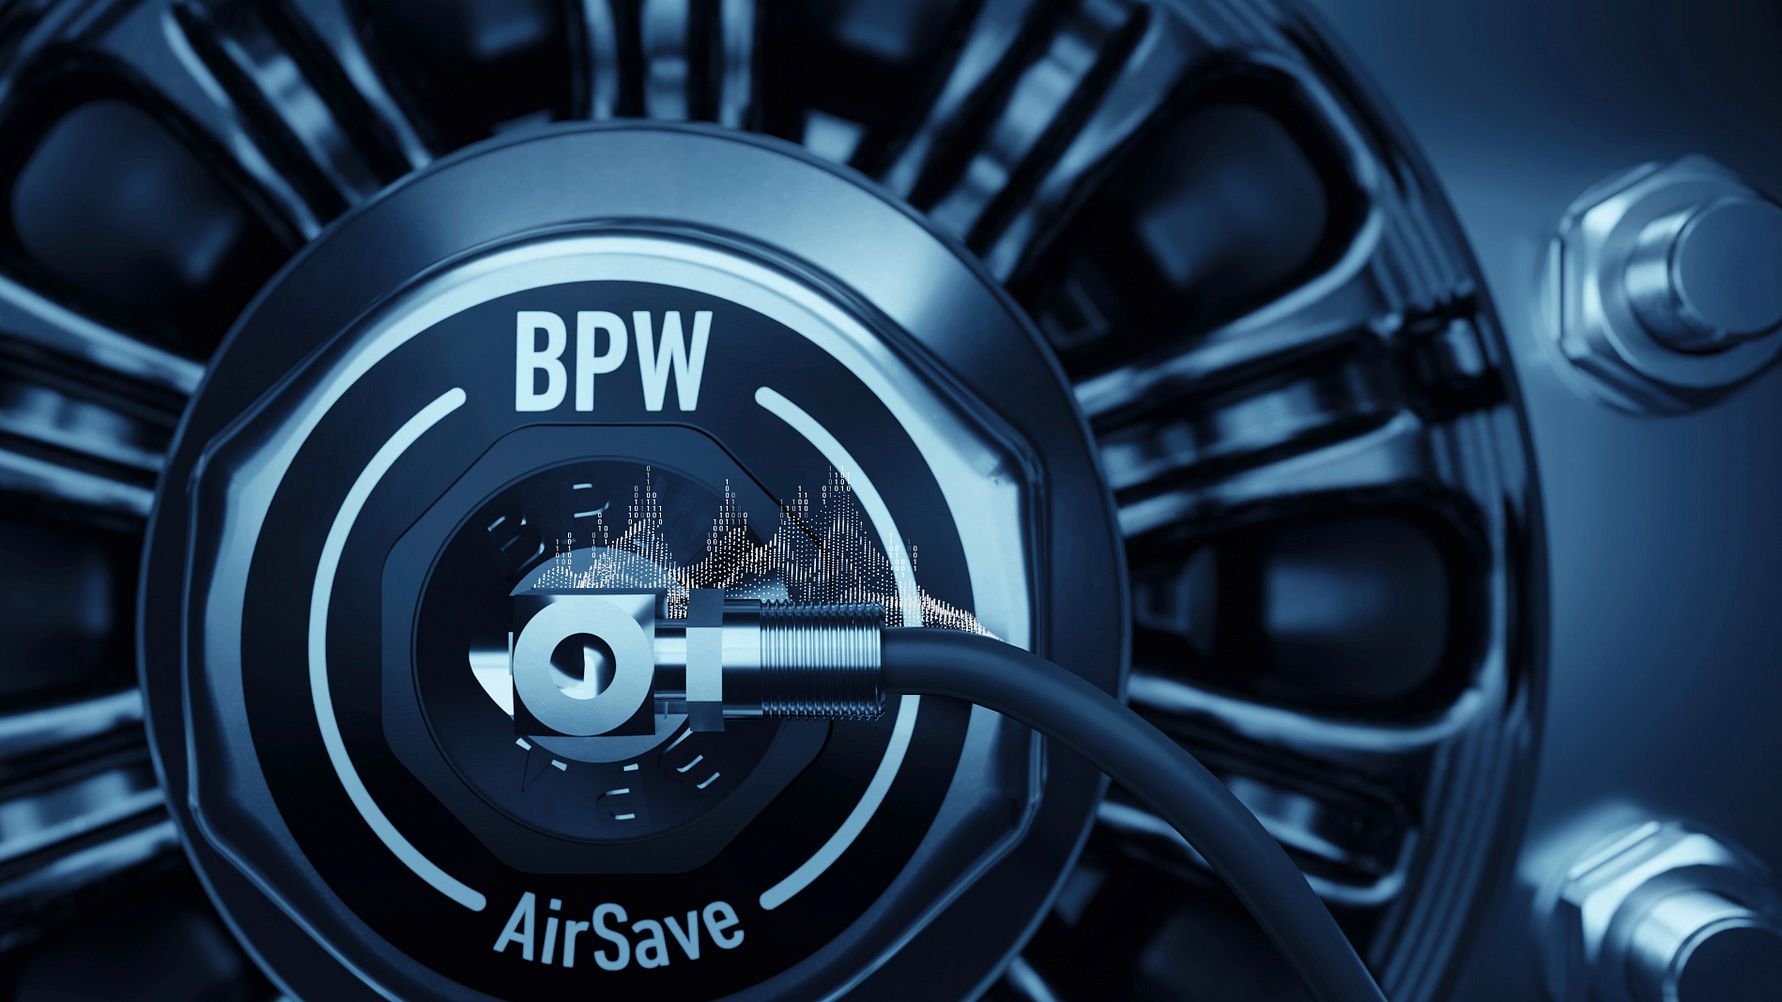 Die neue iC Plus Fahrwerksgeneration steuert und vernetzt das Reifendruckregelsystem AirSave von BPW, das bei Bedarf automatisch Luft nachpumpt.